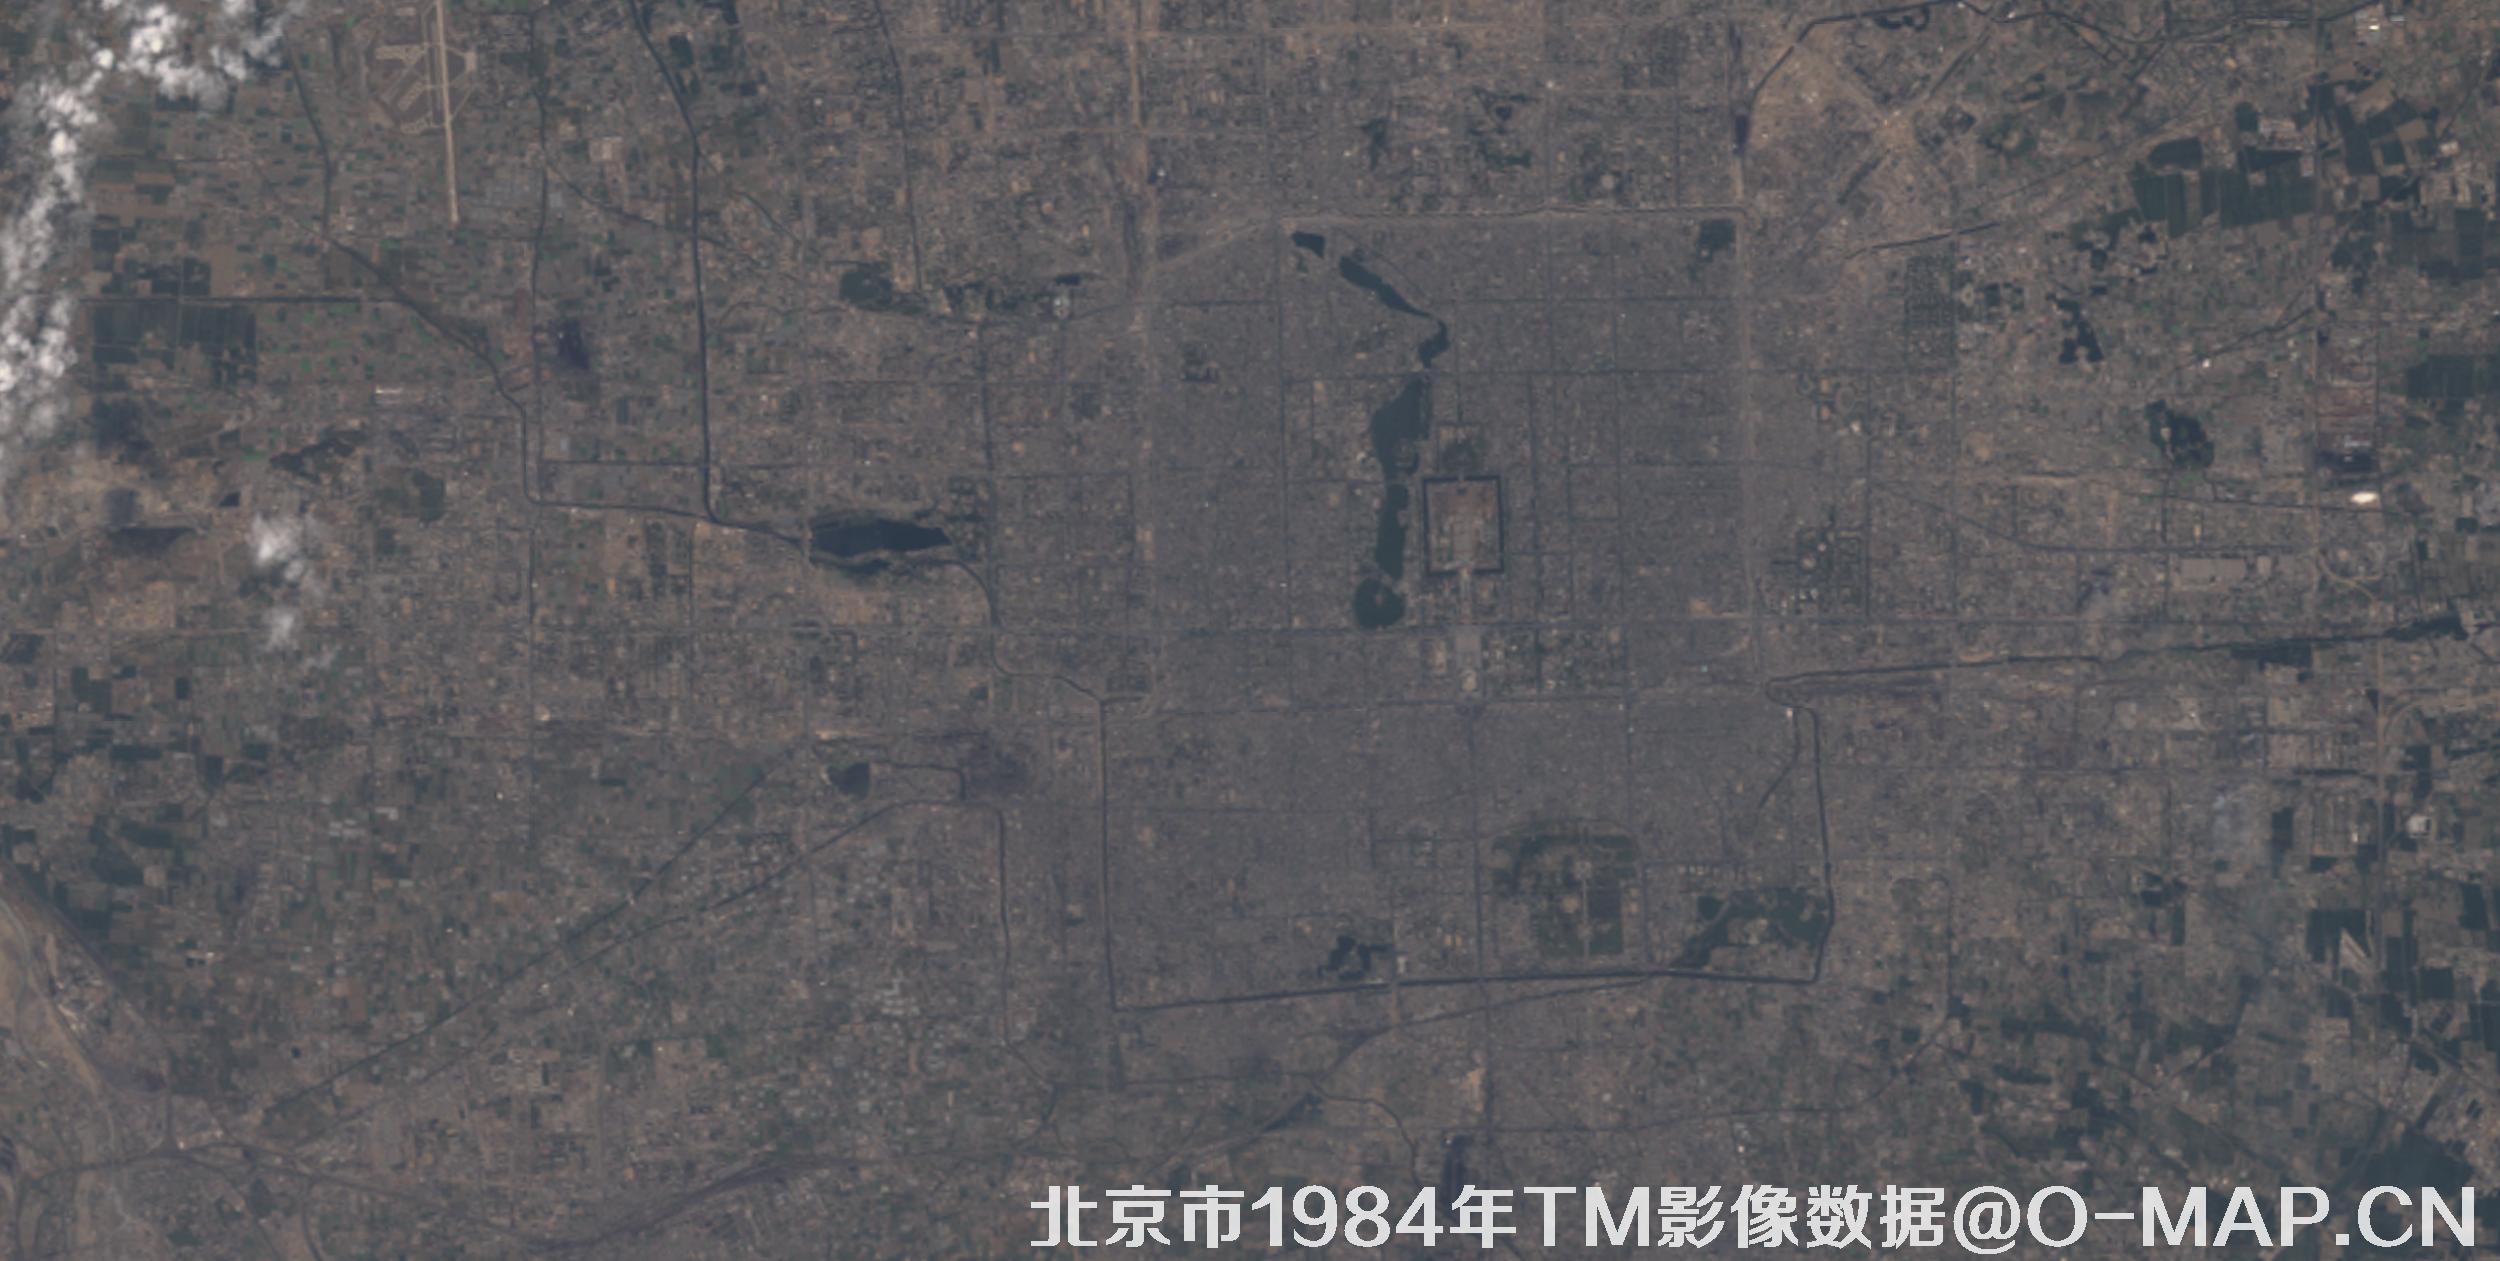 北京市1984年30米分辨率TM传感器影像图